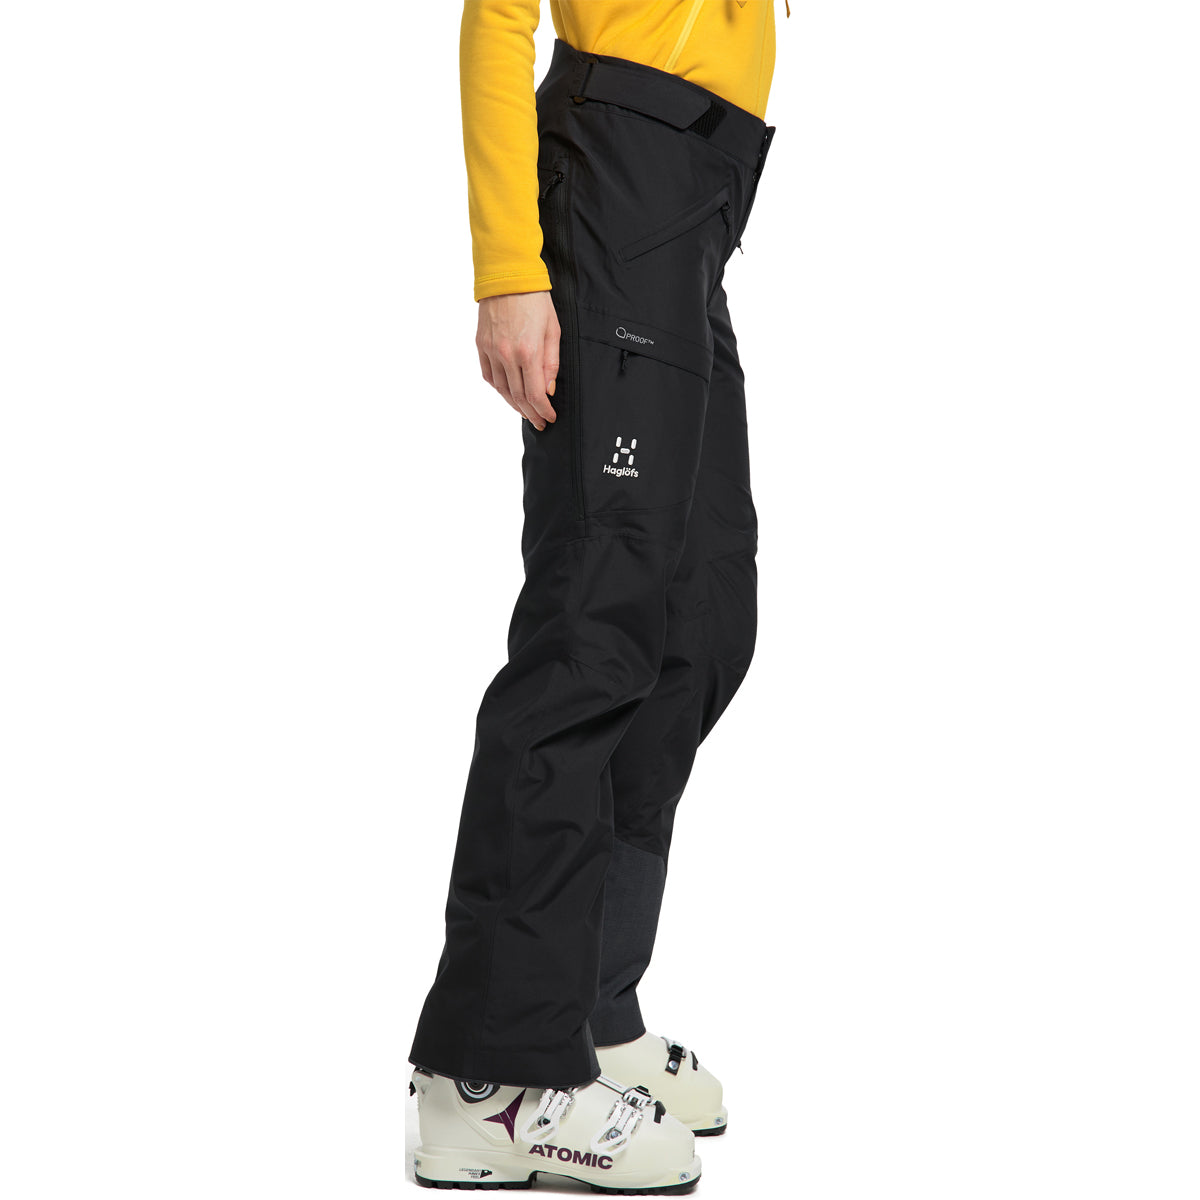 Haglöfs Lumi Form Pant - Pantalón de esquí - Hombre